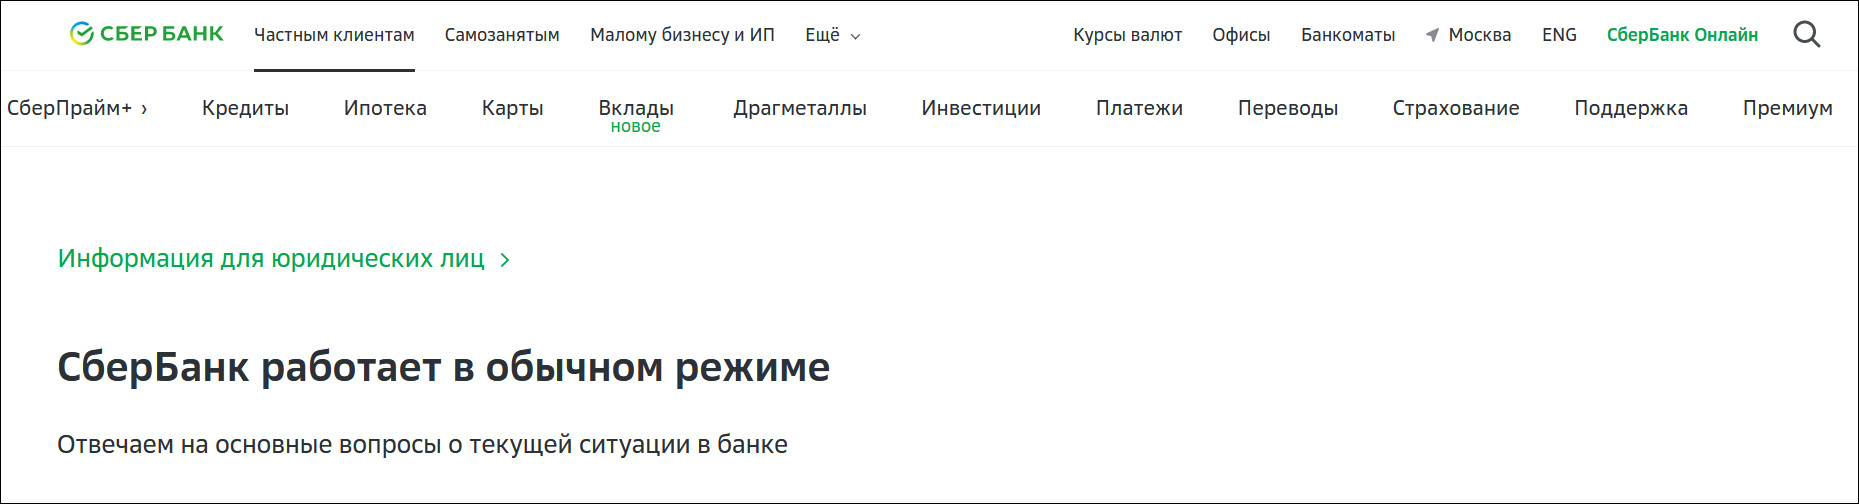 俄罗斯联邦储蓄银行网站截图